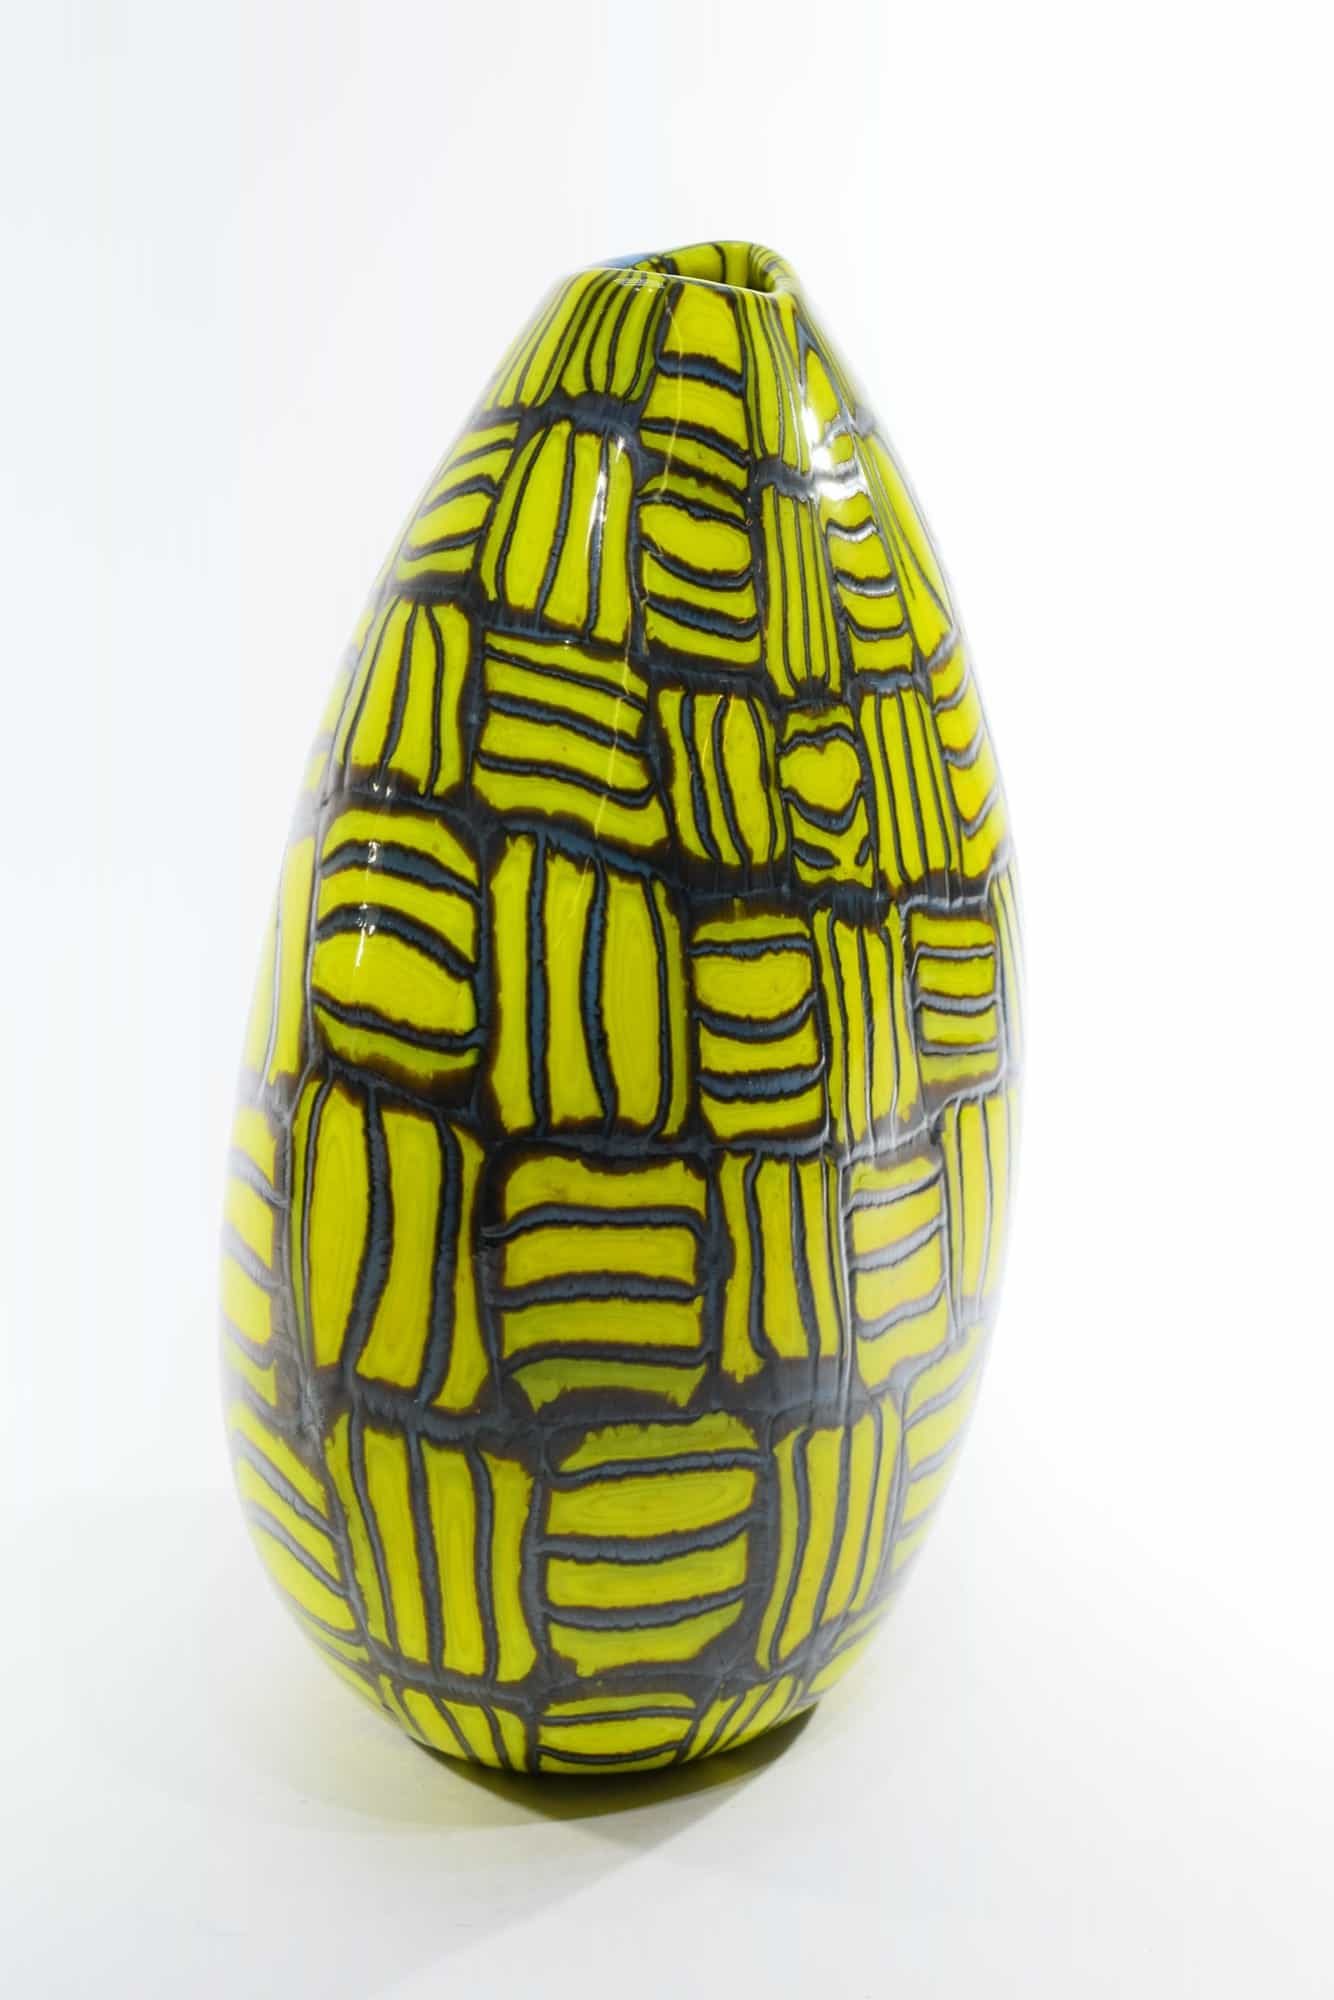 1/1 Murano Glass Murrine Vase - (Art. 34923)